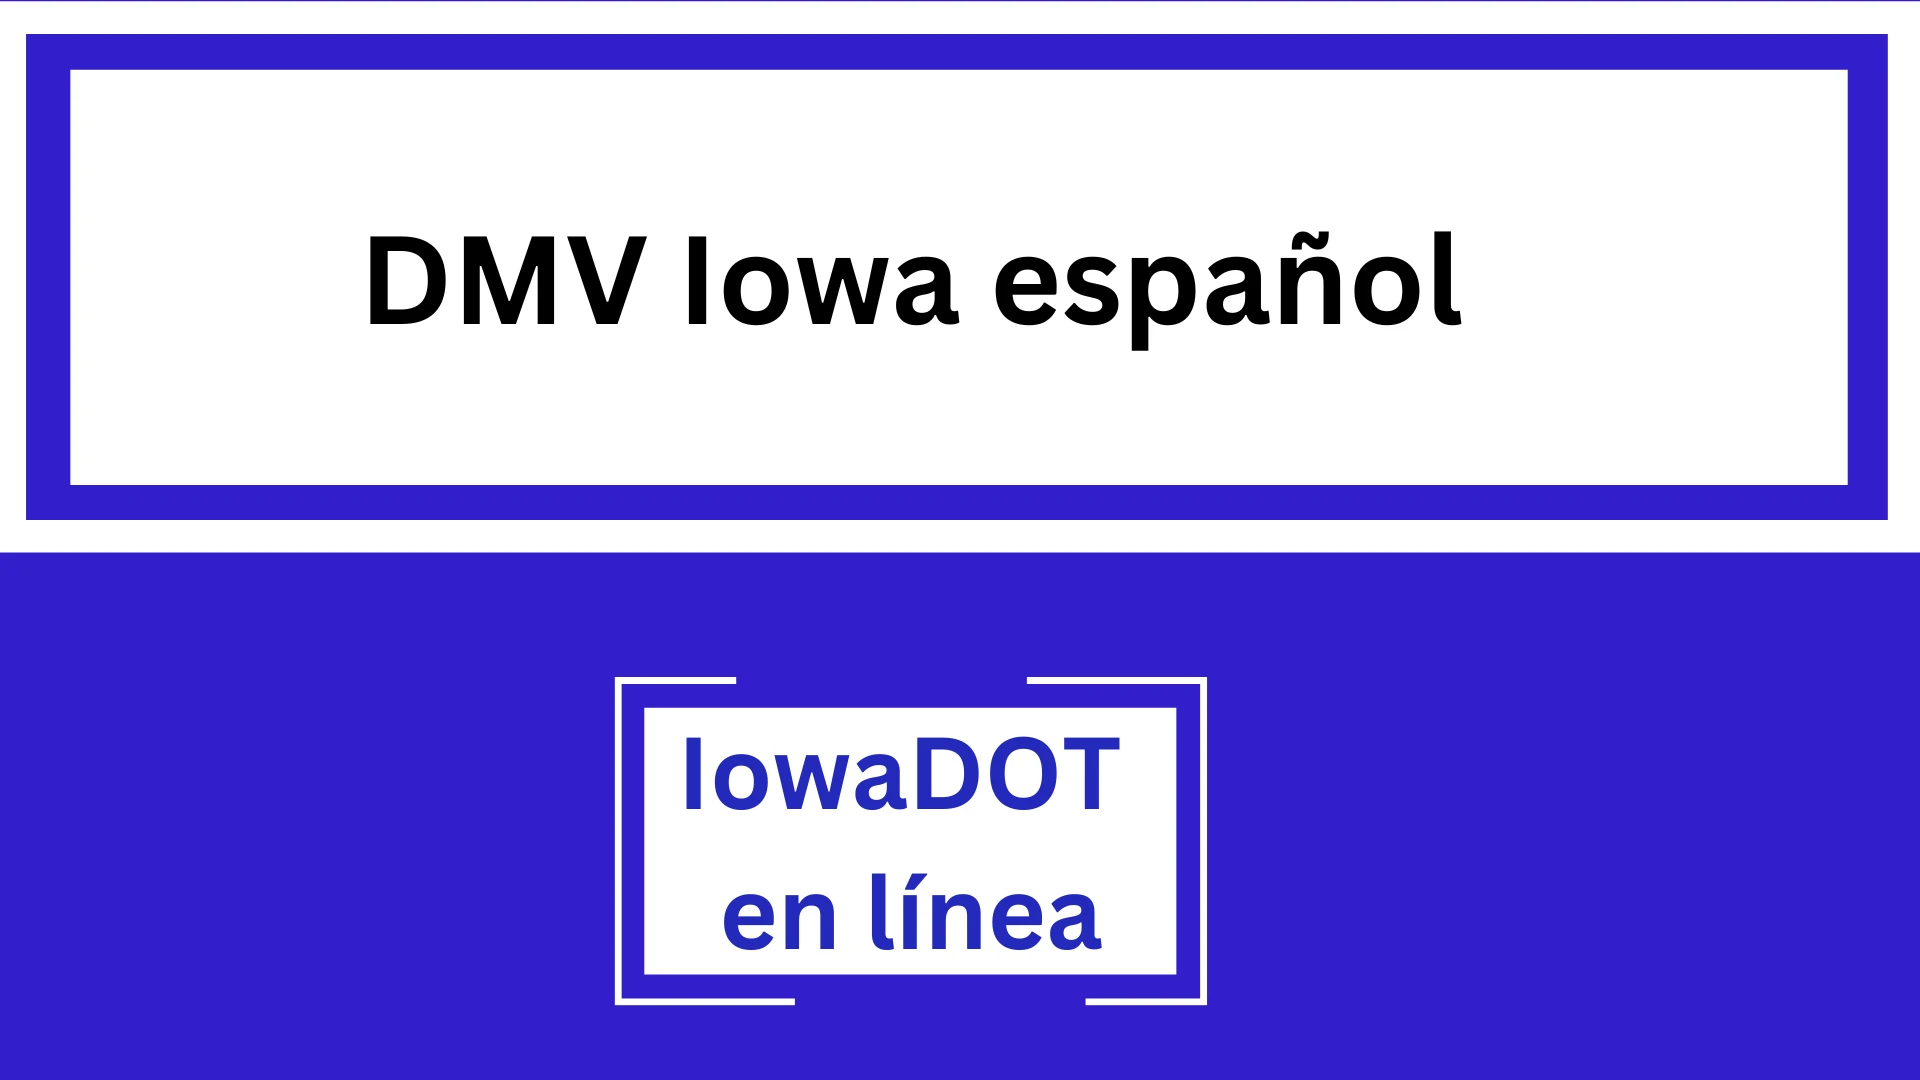 DMV Iowa